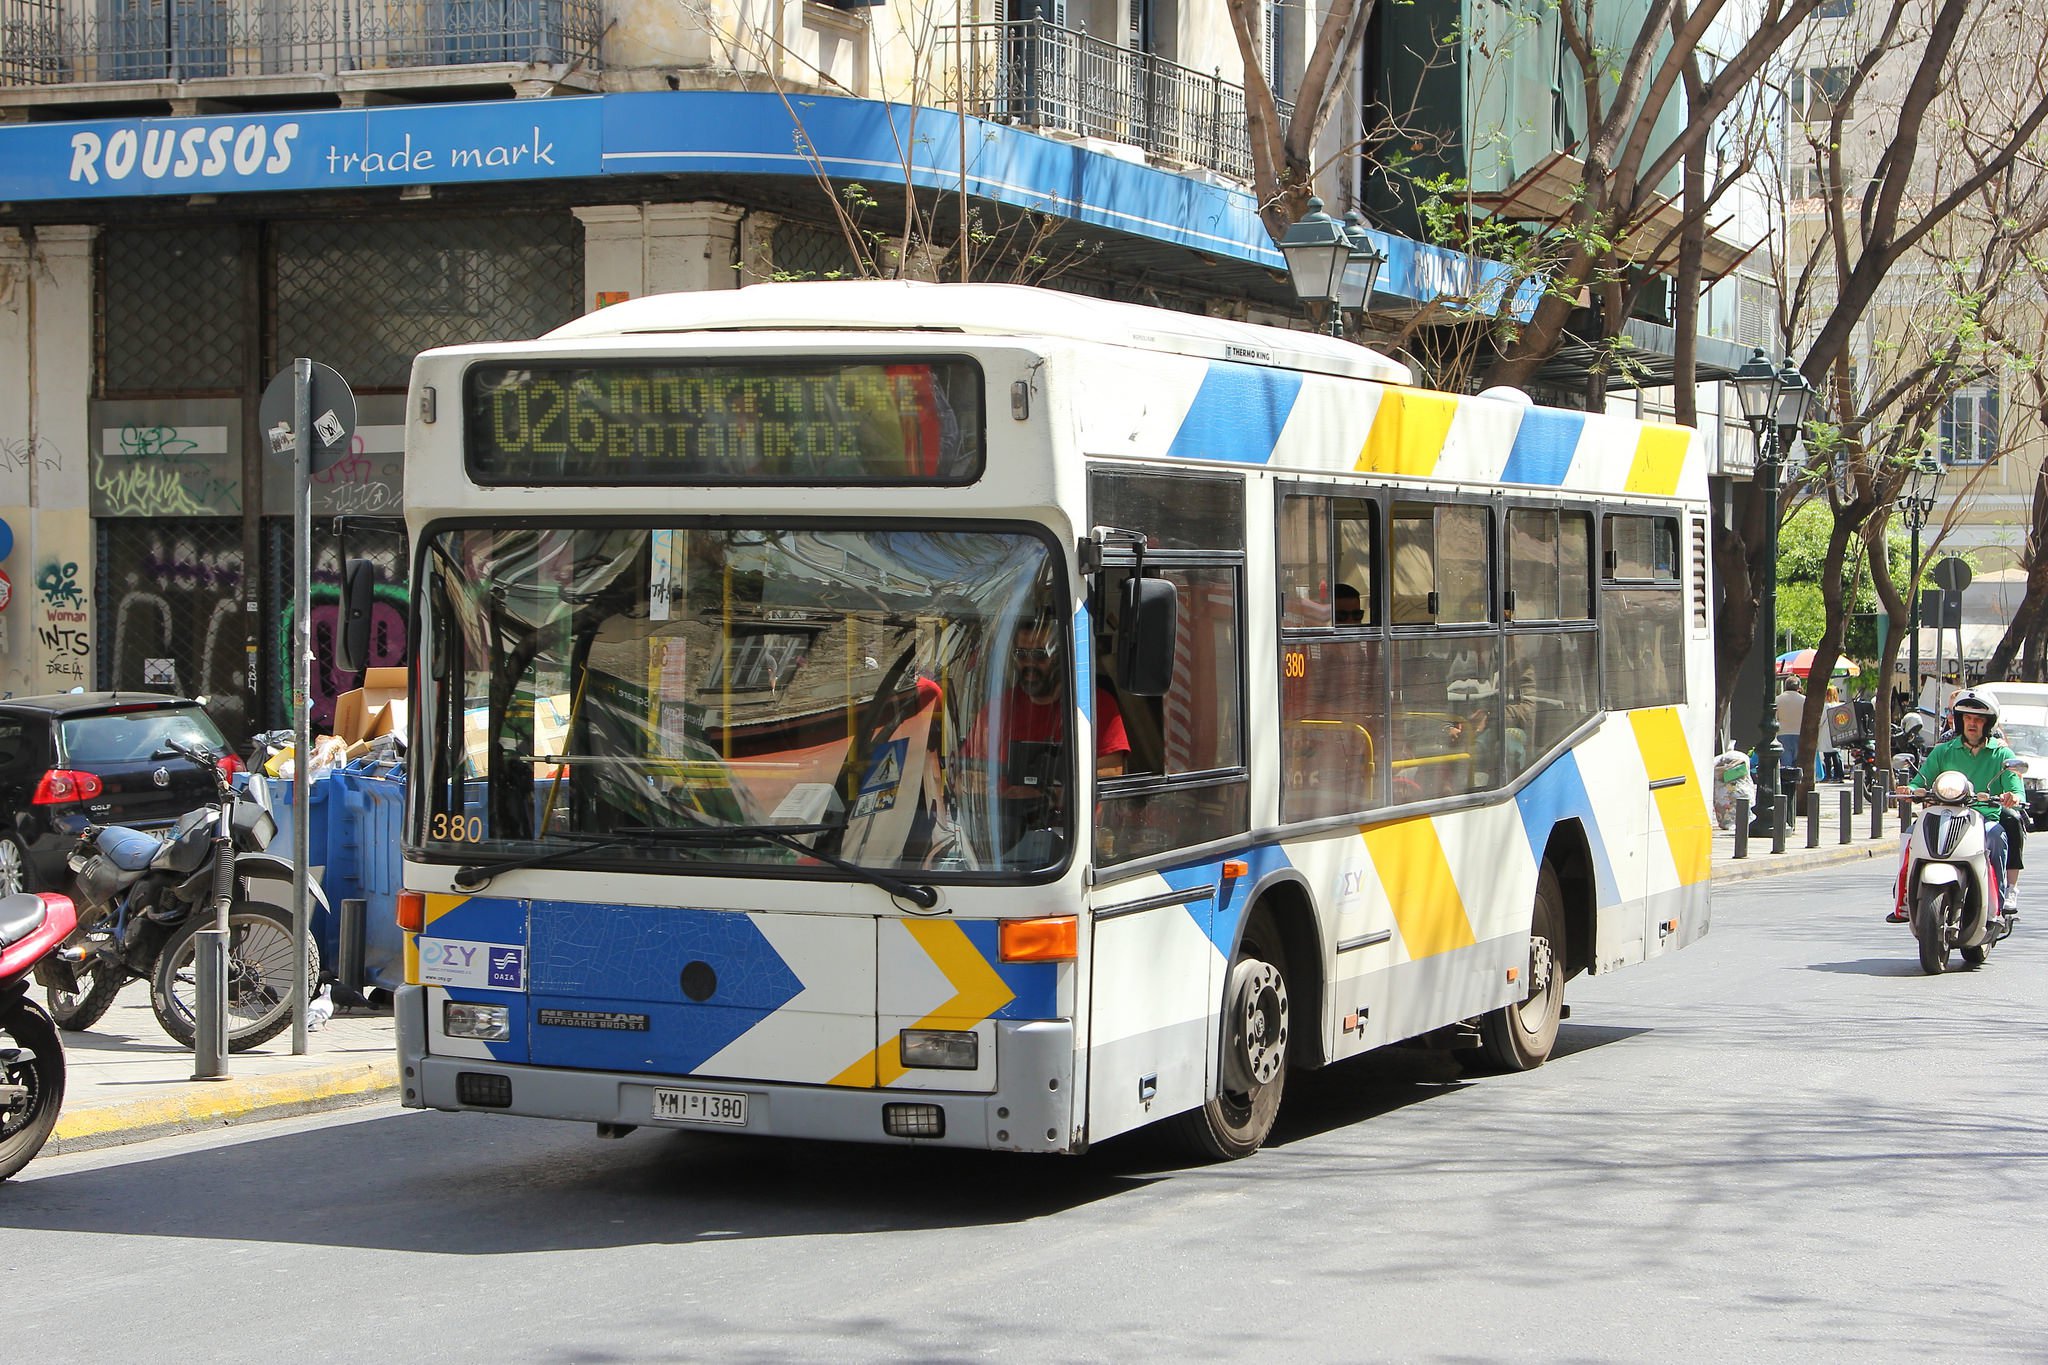 Ten buses